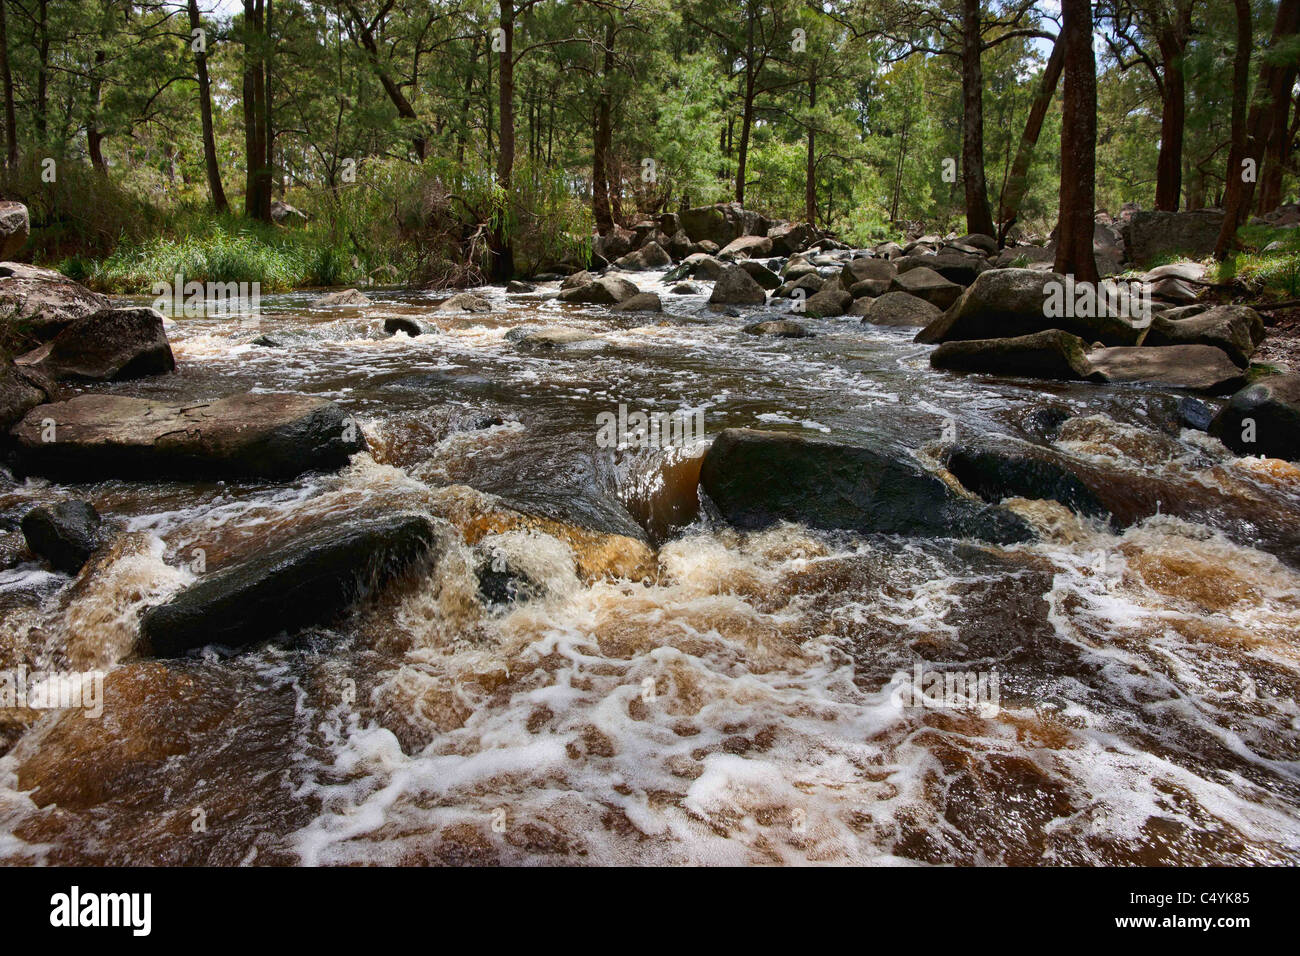 Bild der rauschenden Wasser im Fluss oder Bach Stockfoto